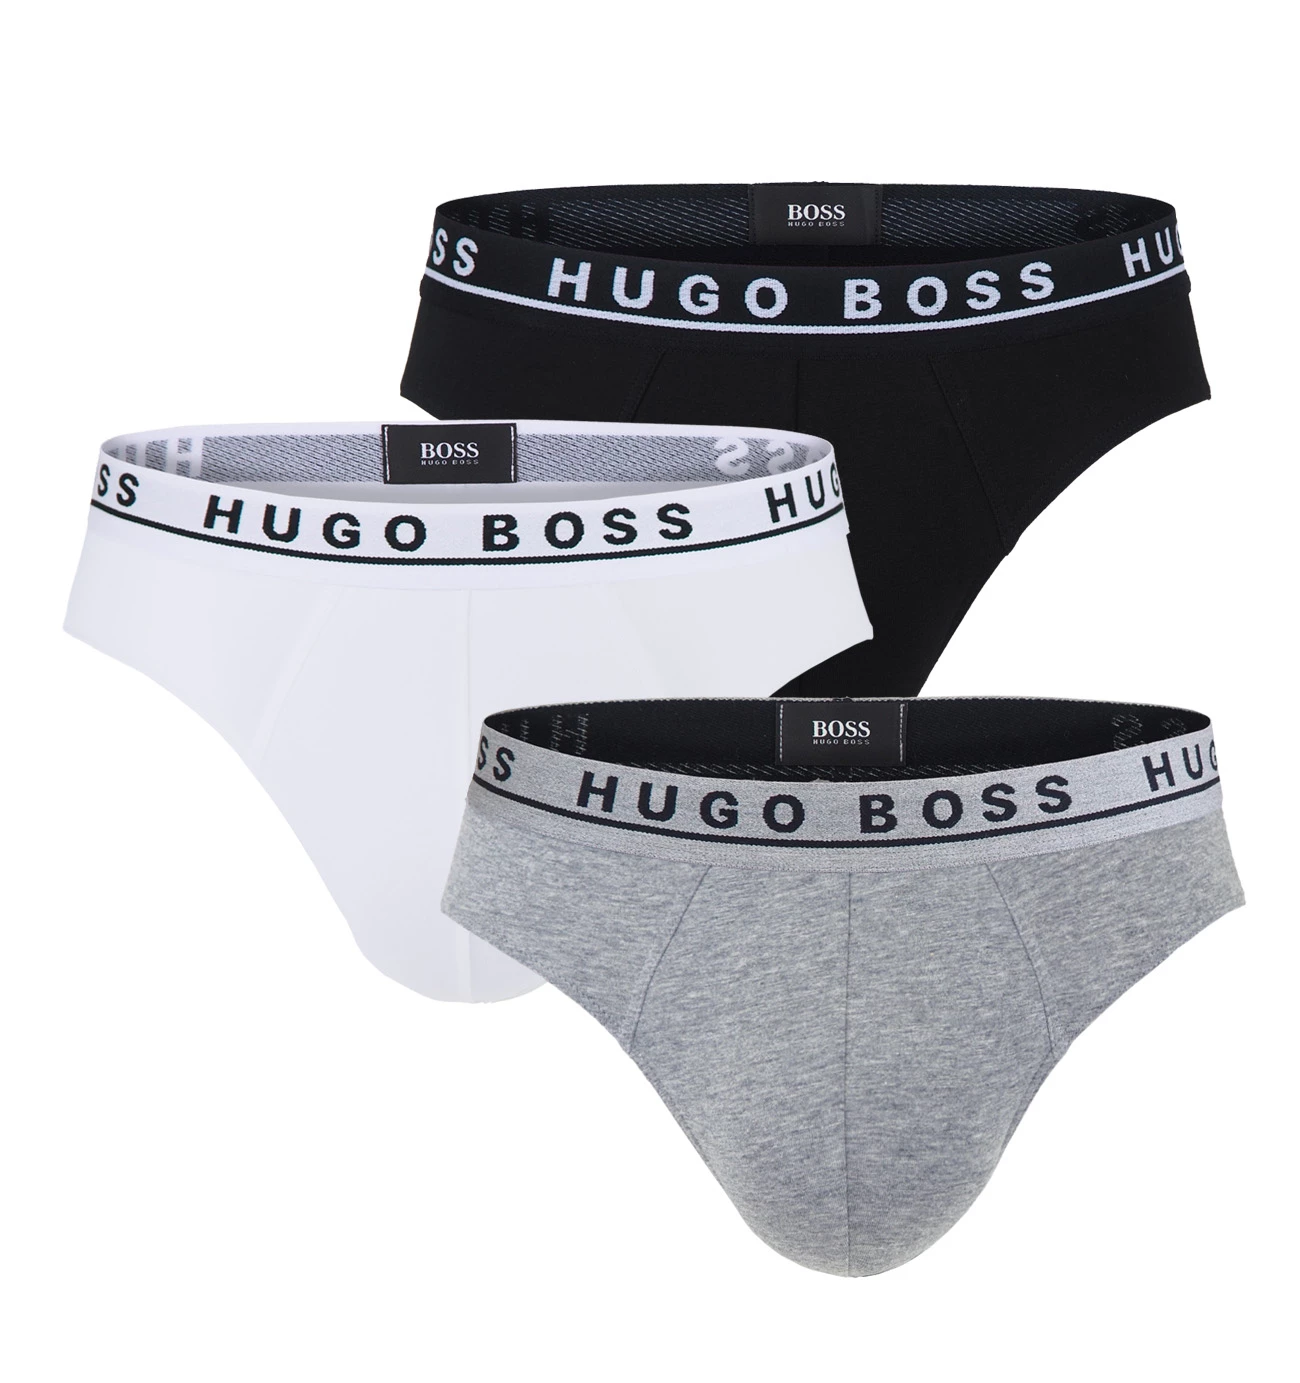 BOSS - 3PACK slipy black, white, gray (HUGO BOSS)